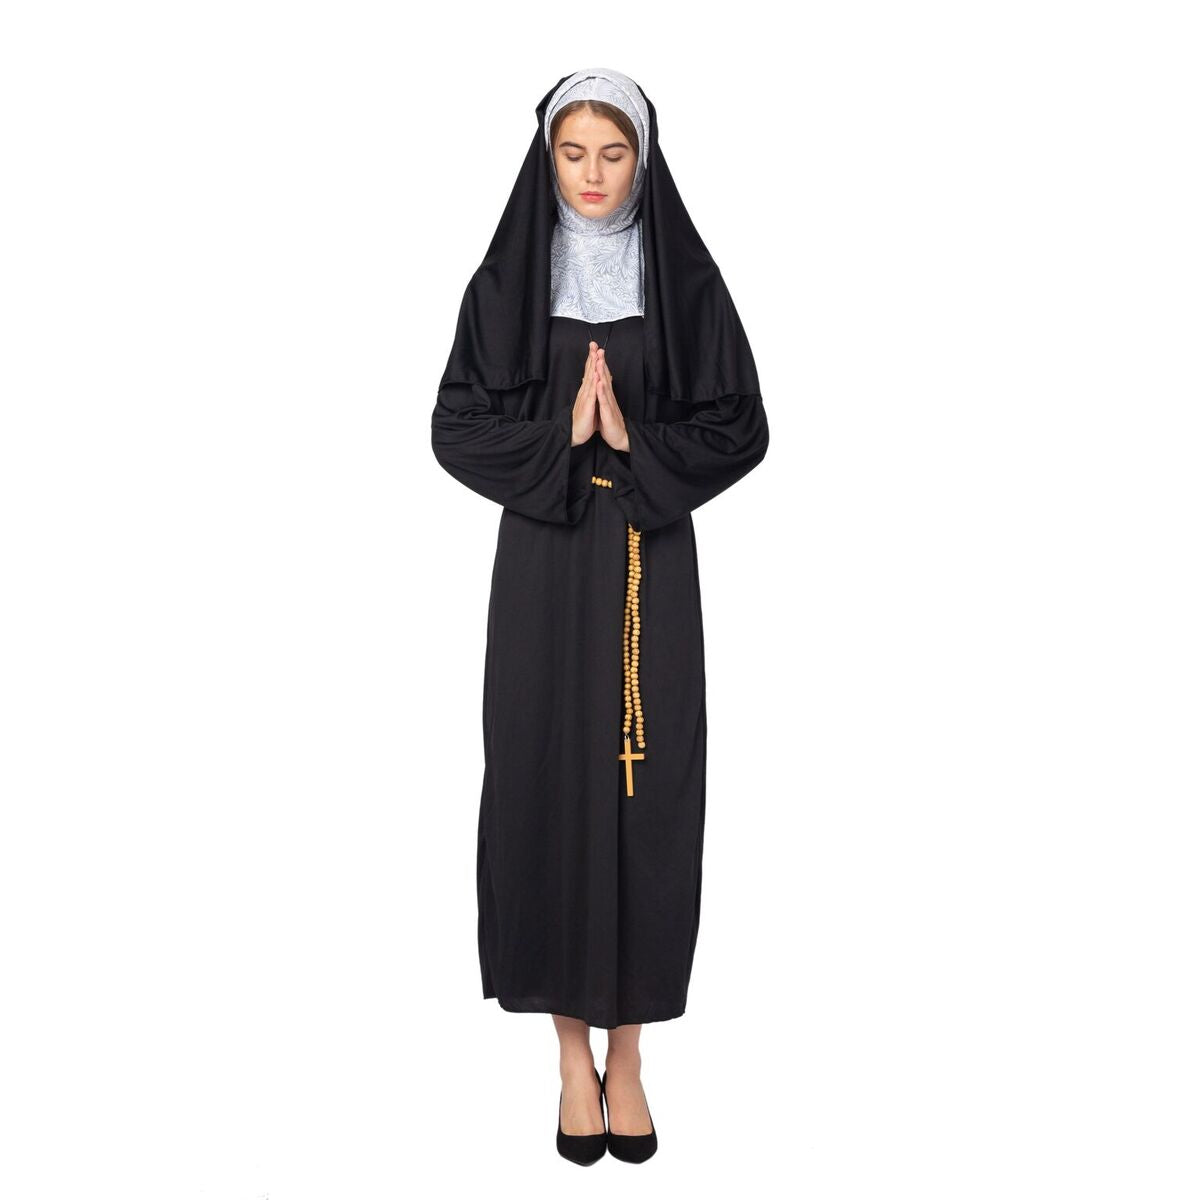 Spooktacular Creations Suora Costume da Halloween per Adulti Vestito da  Suora the Nun Costume